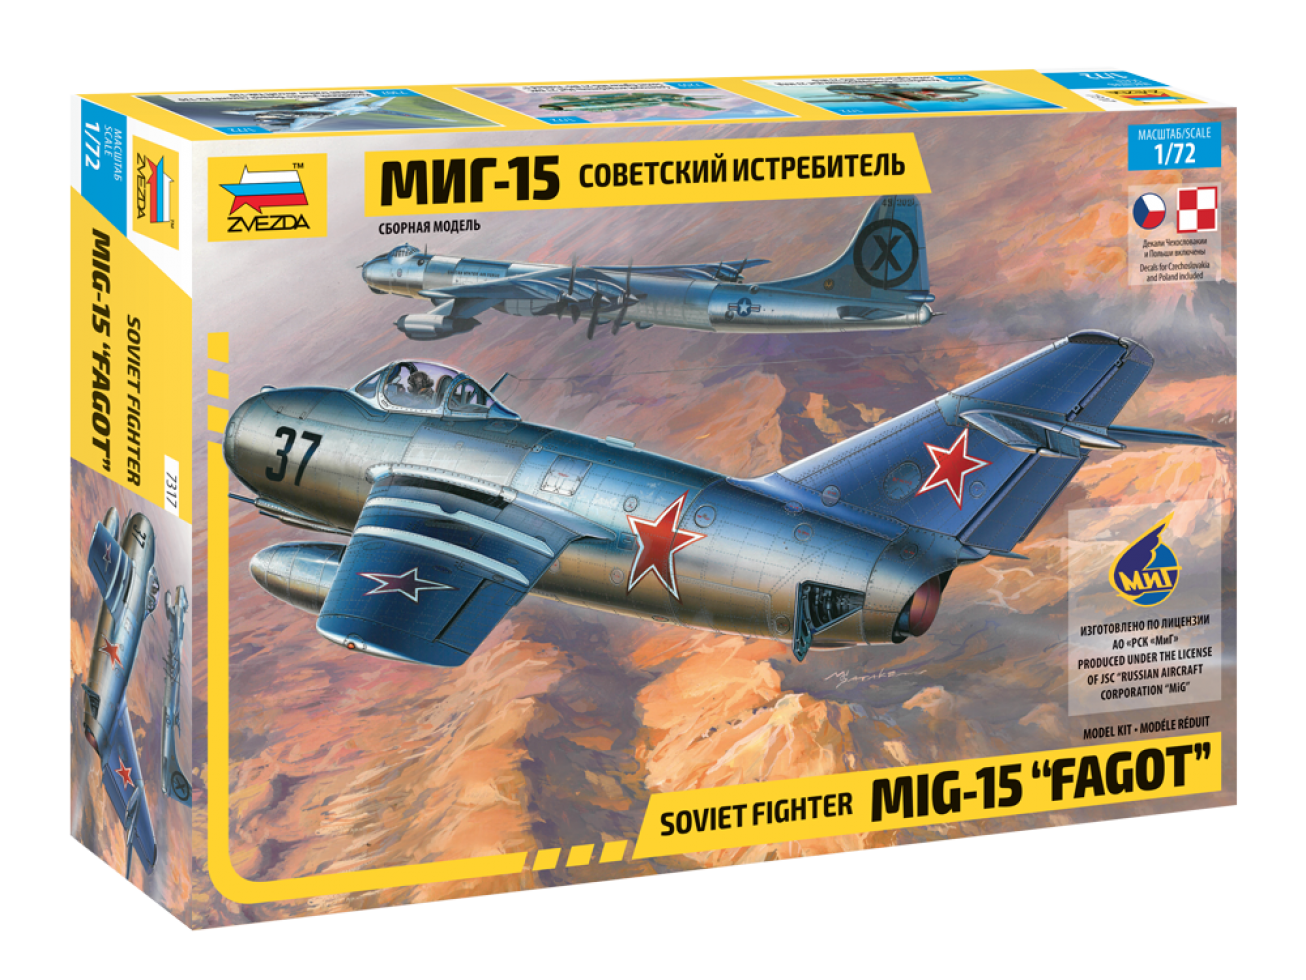 Сборная модель Советский истребитель МиГ-15, производитель «Звезда», масштаб 1:72, артикул 7317 # 1 hobbyplus.ru